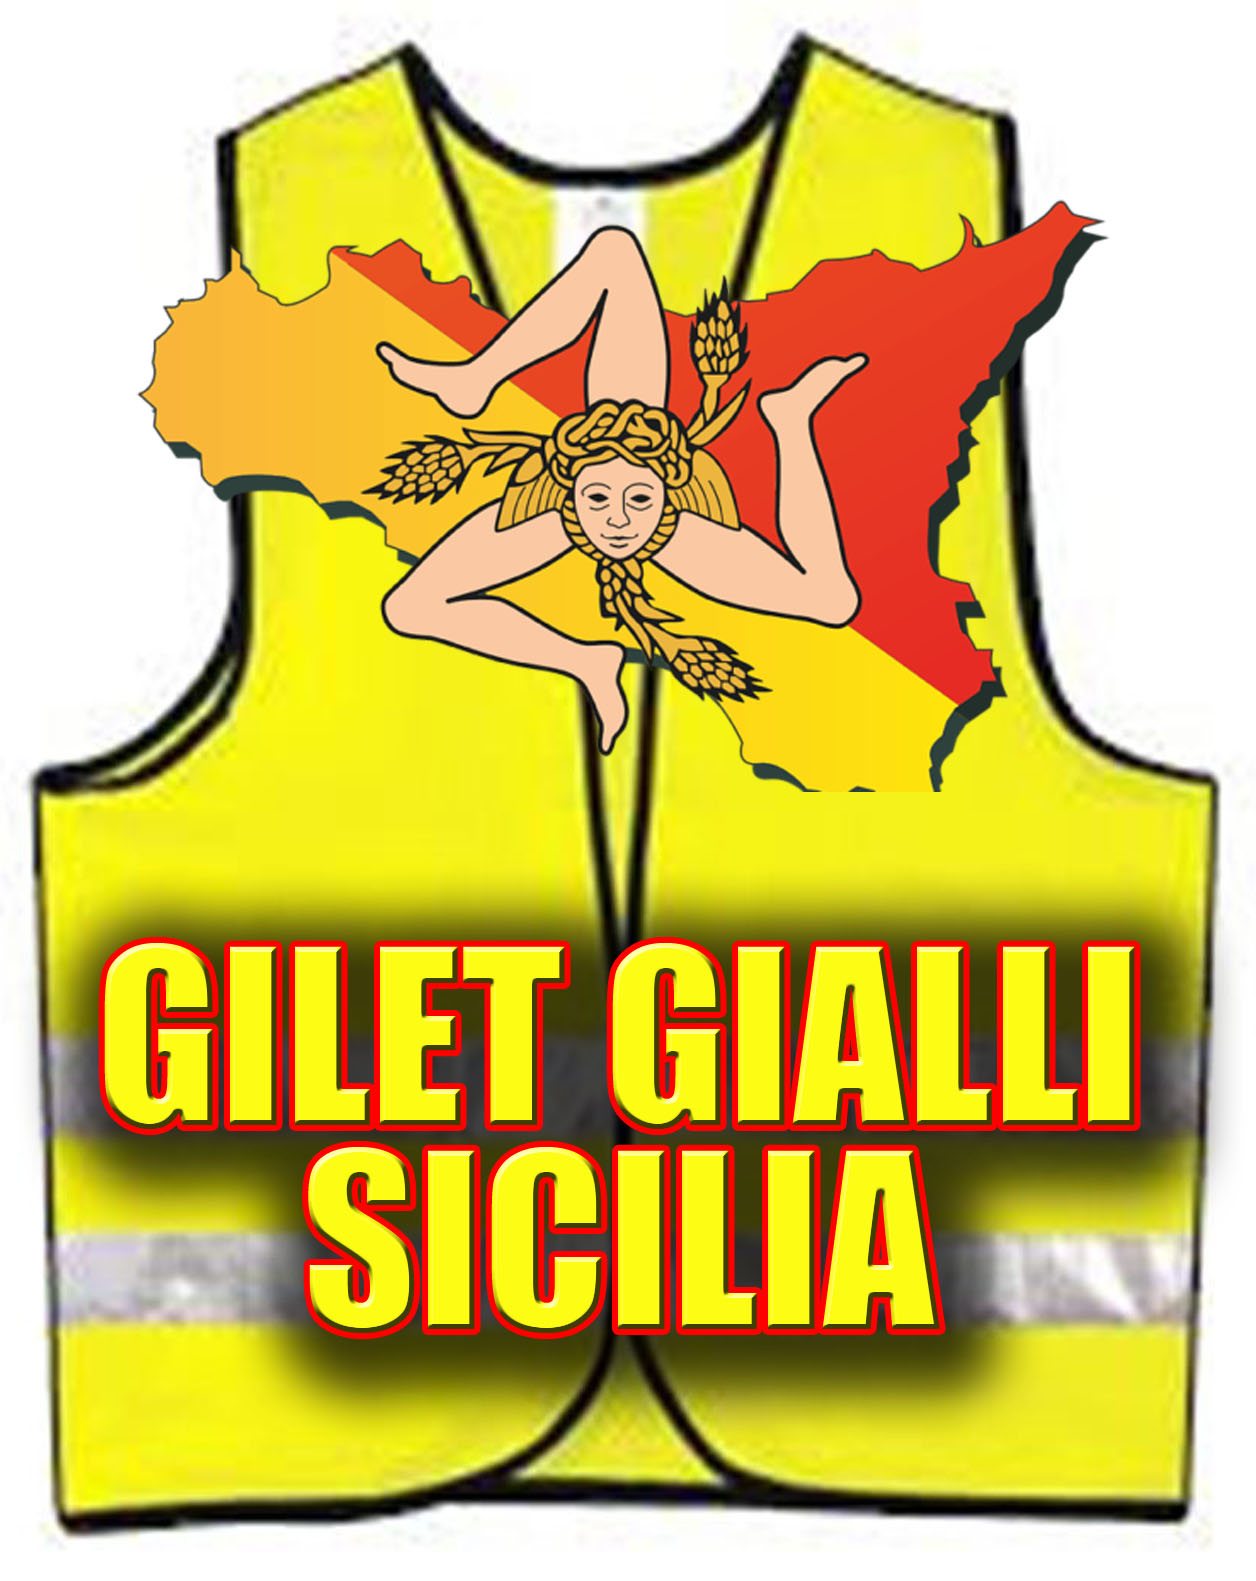 Gilet Gialli Sicilia